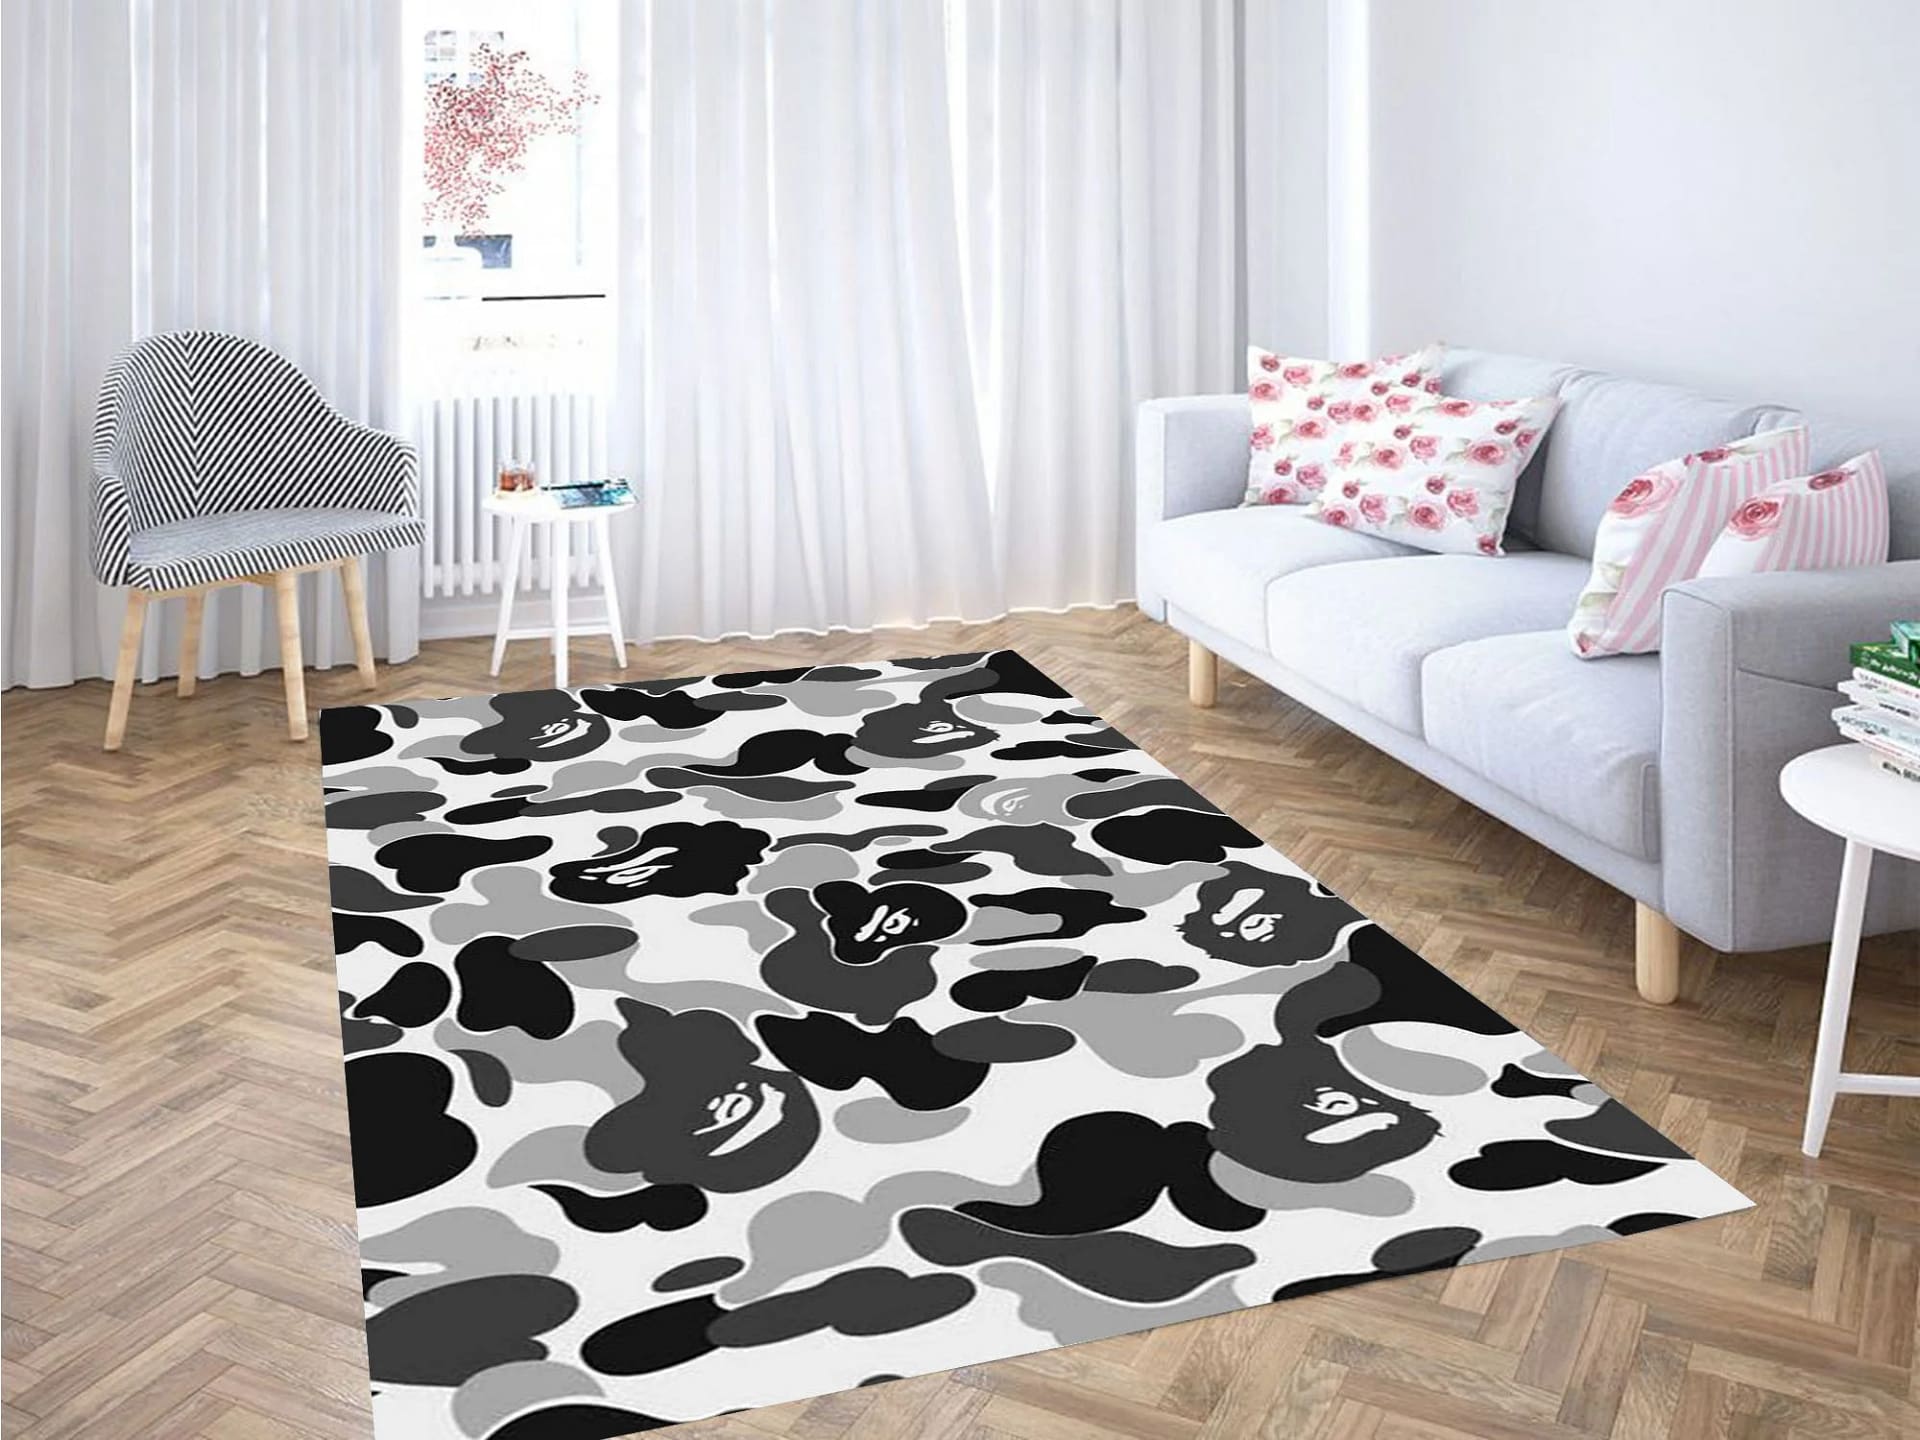 White Bape Camo Background Carpet Rug